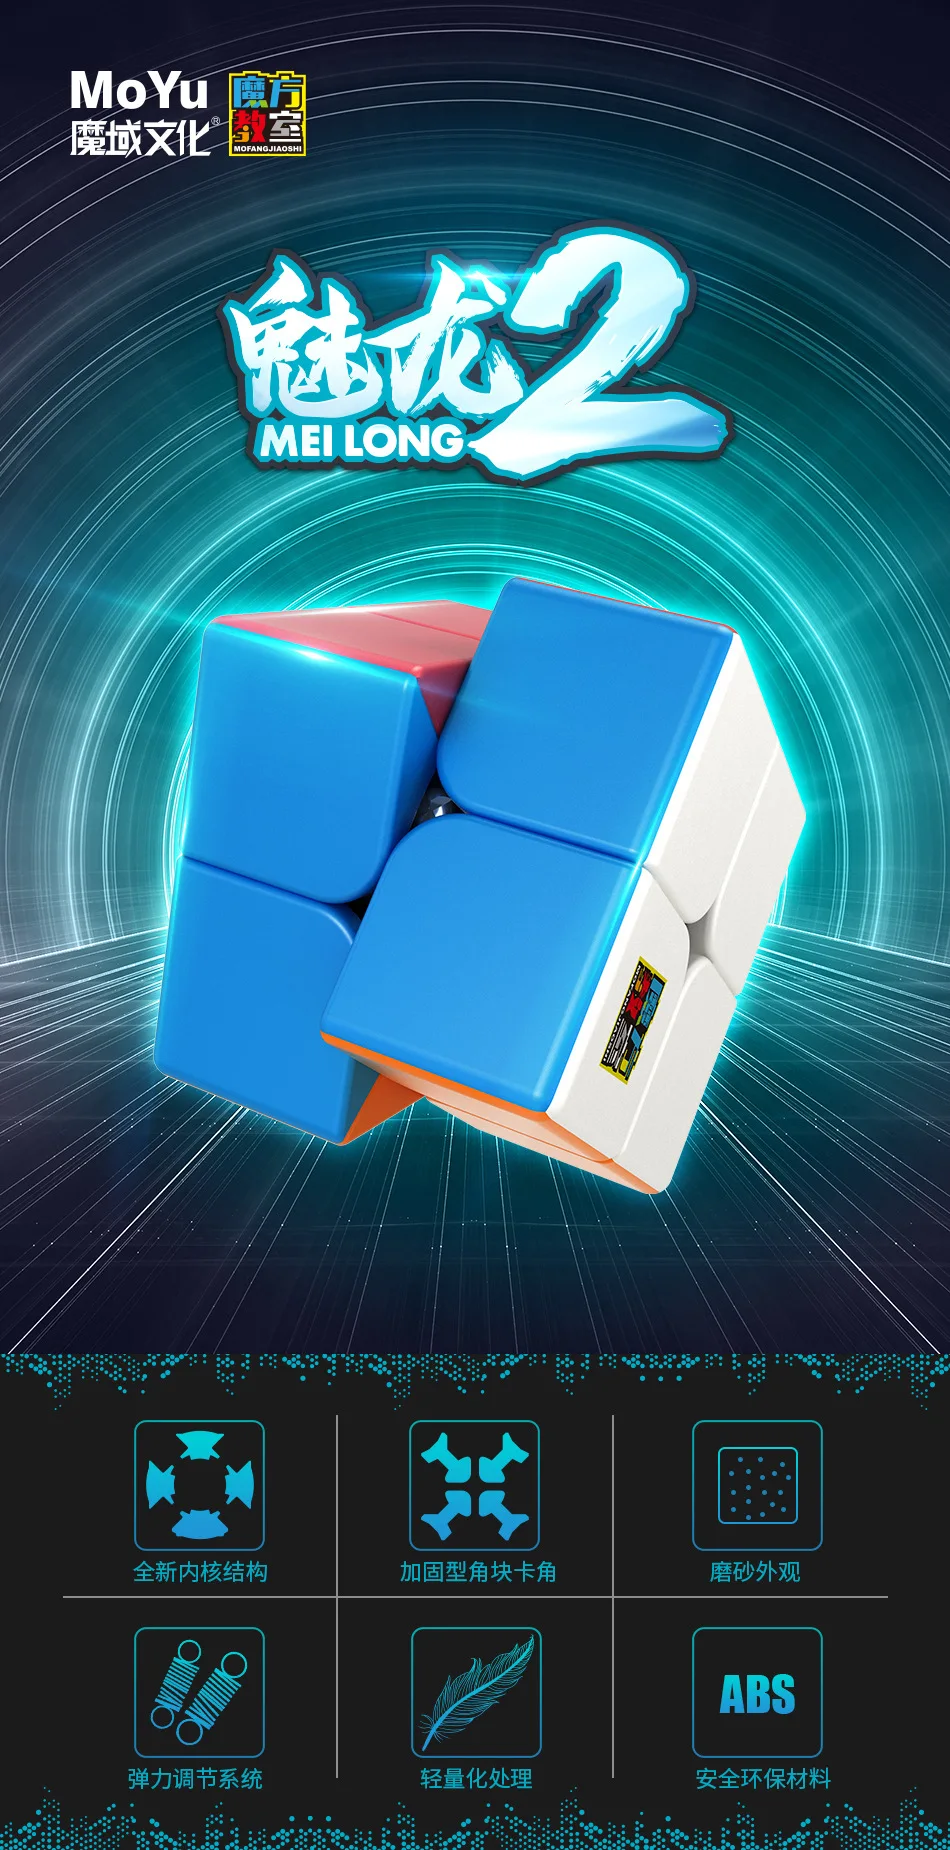 MOYU Meilong Magic Professional 2x2x2 волшебный куб головоломка на скорость 2x2 куб Развивающие игрушки Подарки cubo magico